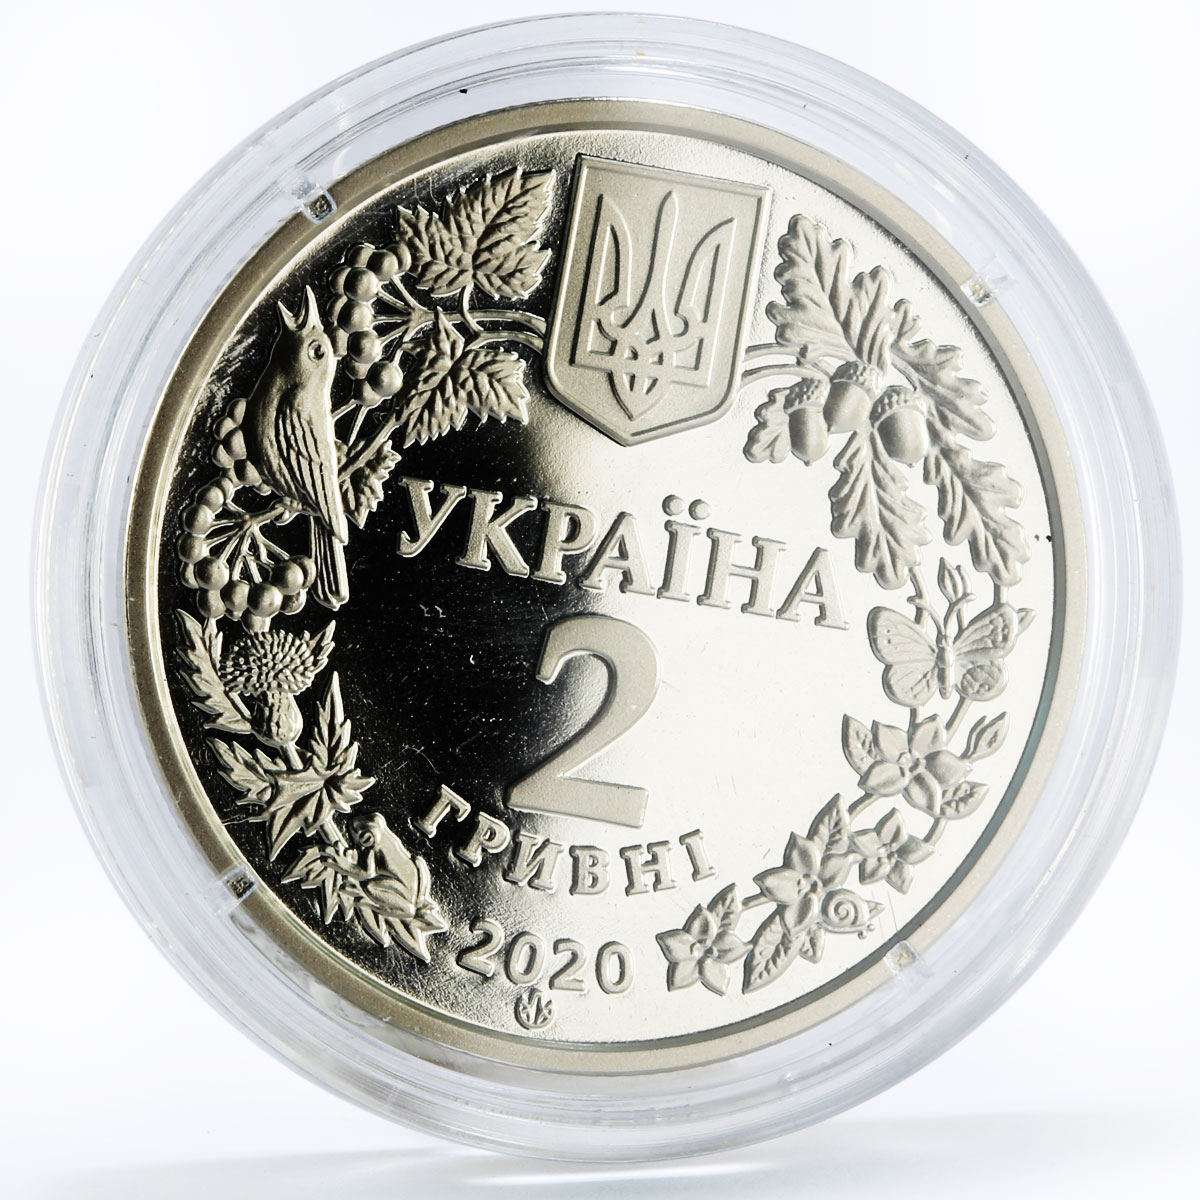 Ukraine 2 hryvnias Red Book series Scoop Luxury nickel coin 2020